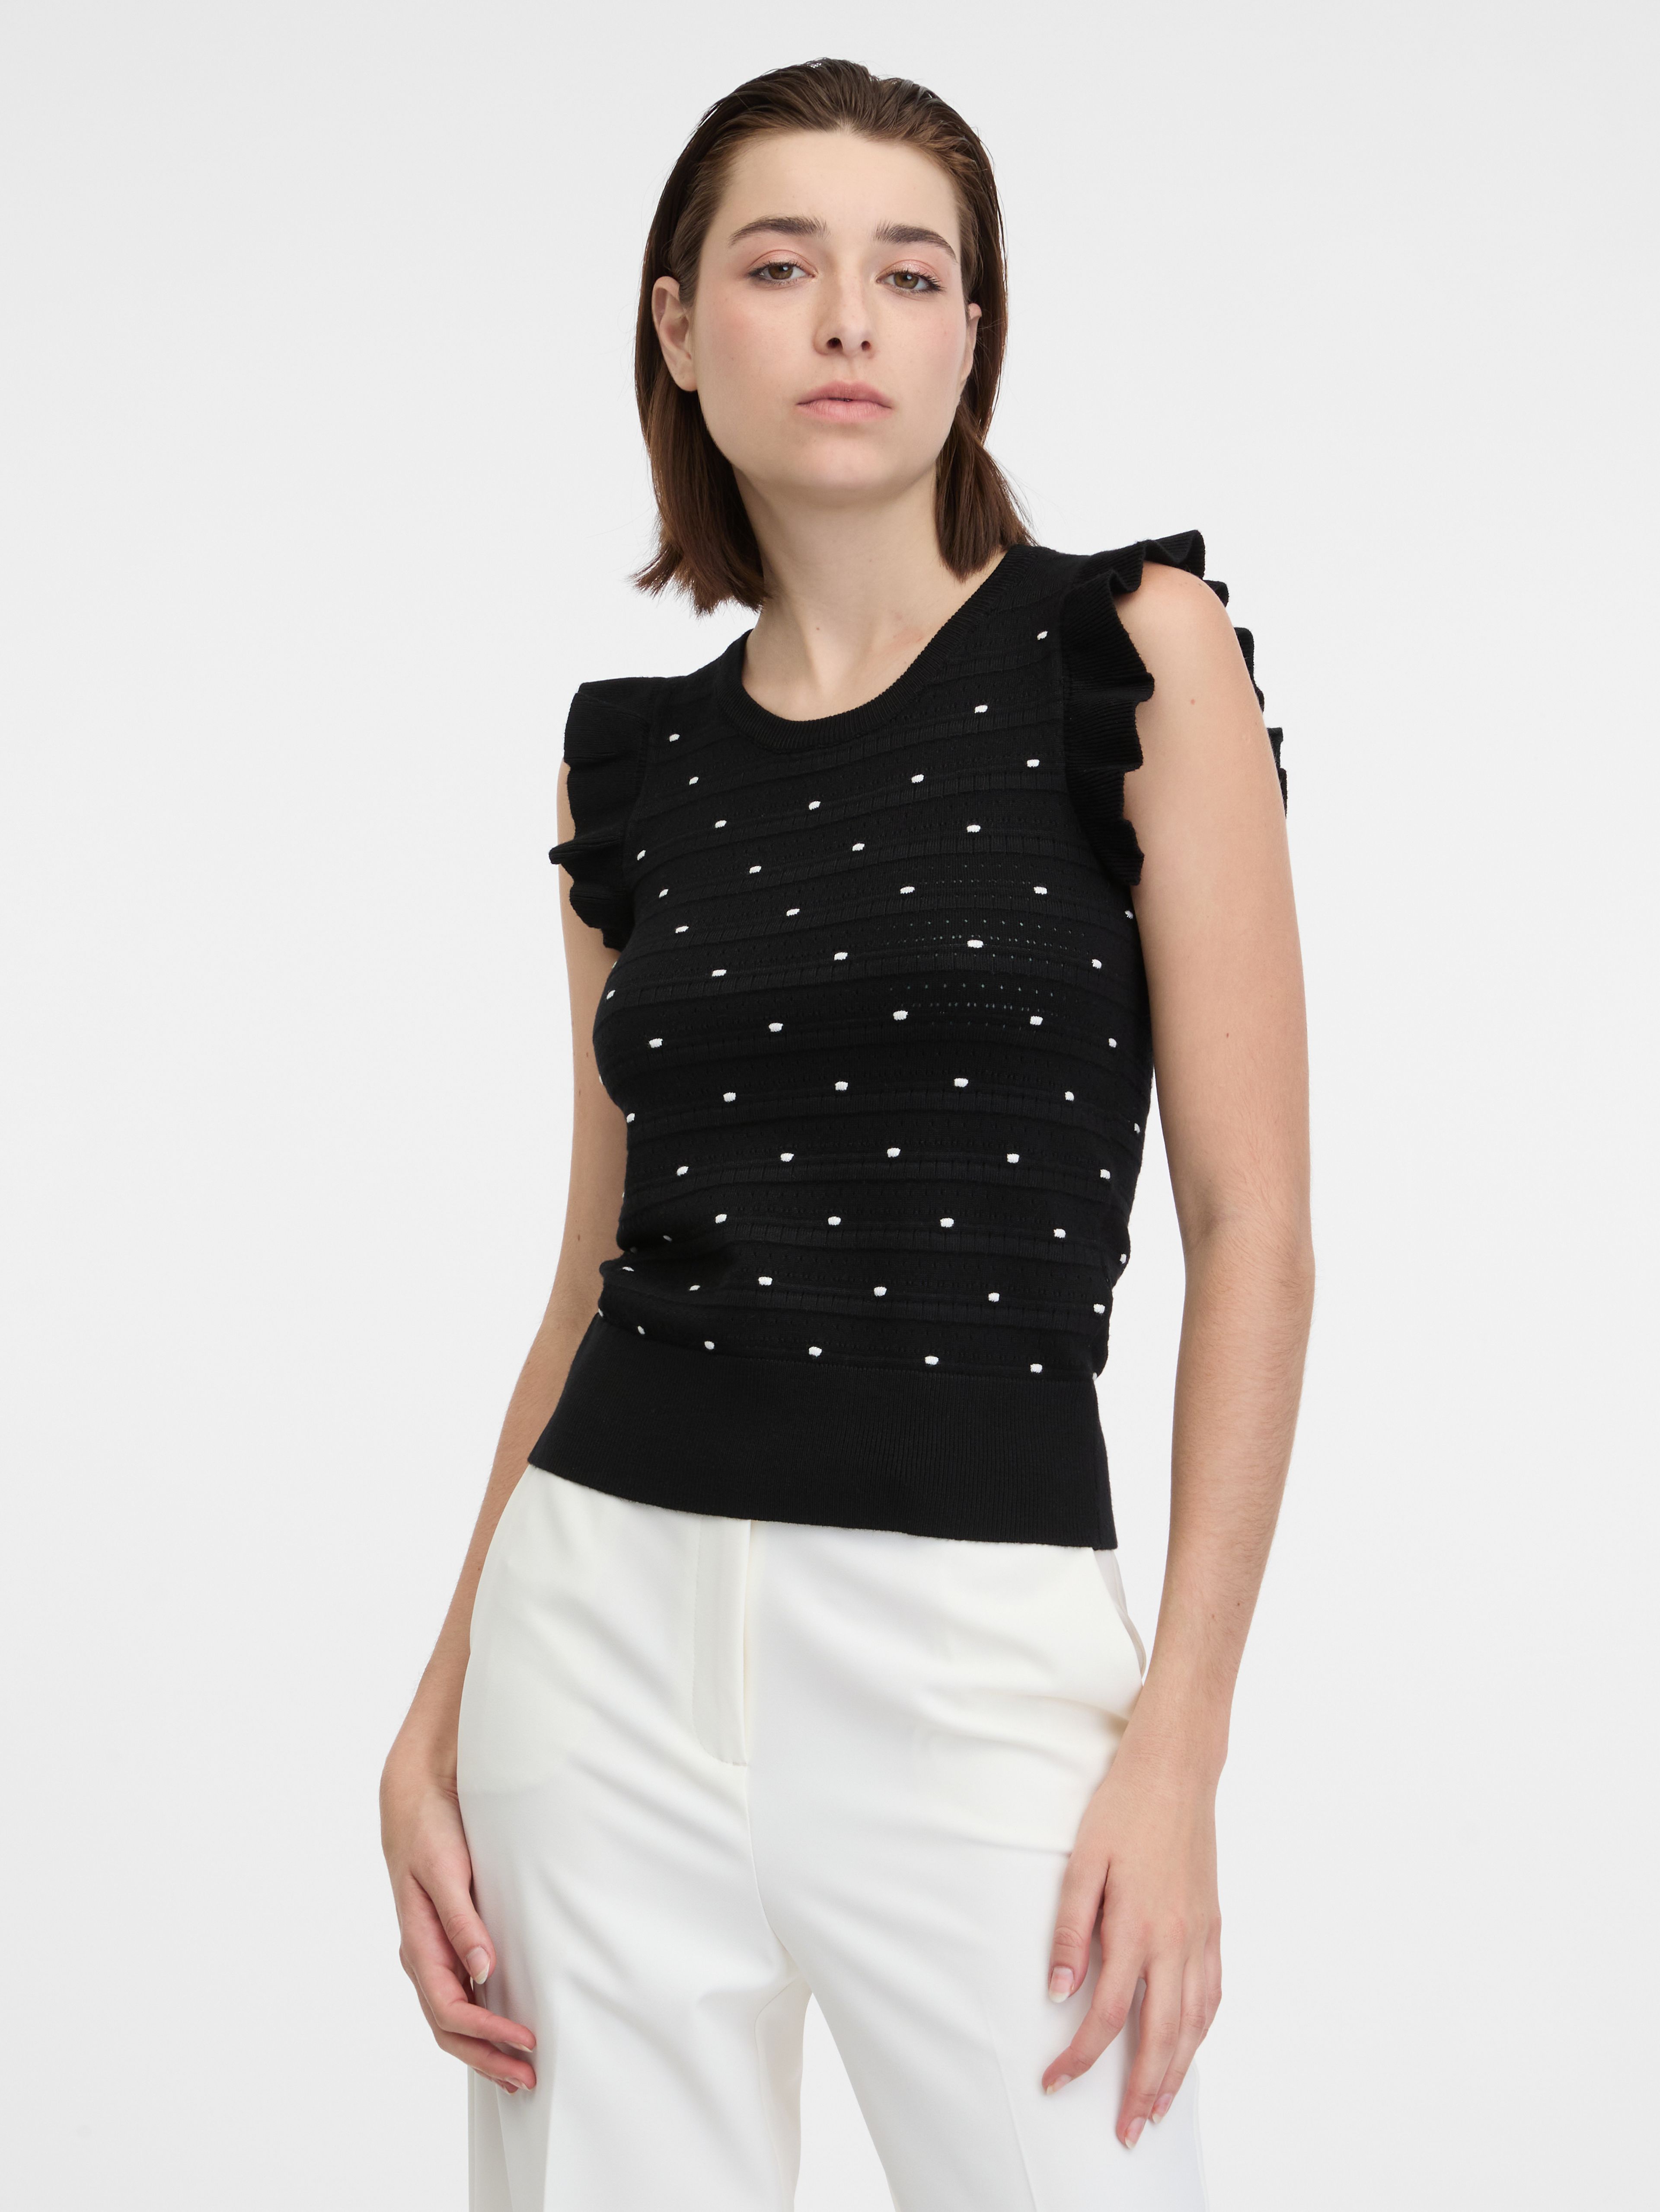 Černé dámské puntíkované svetrové tričko ORSAY